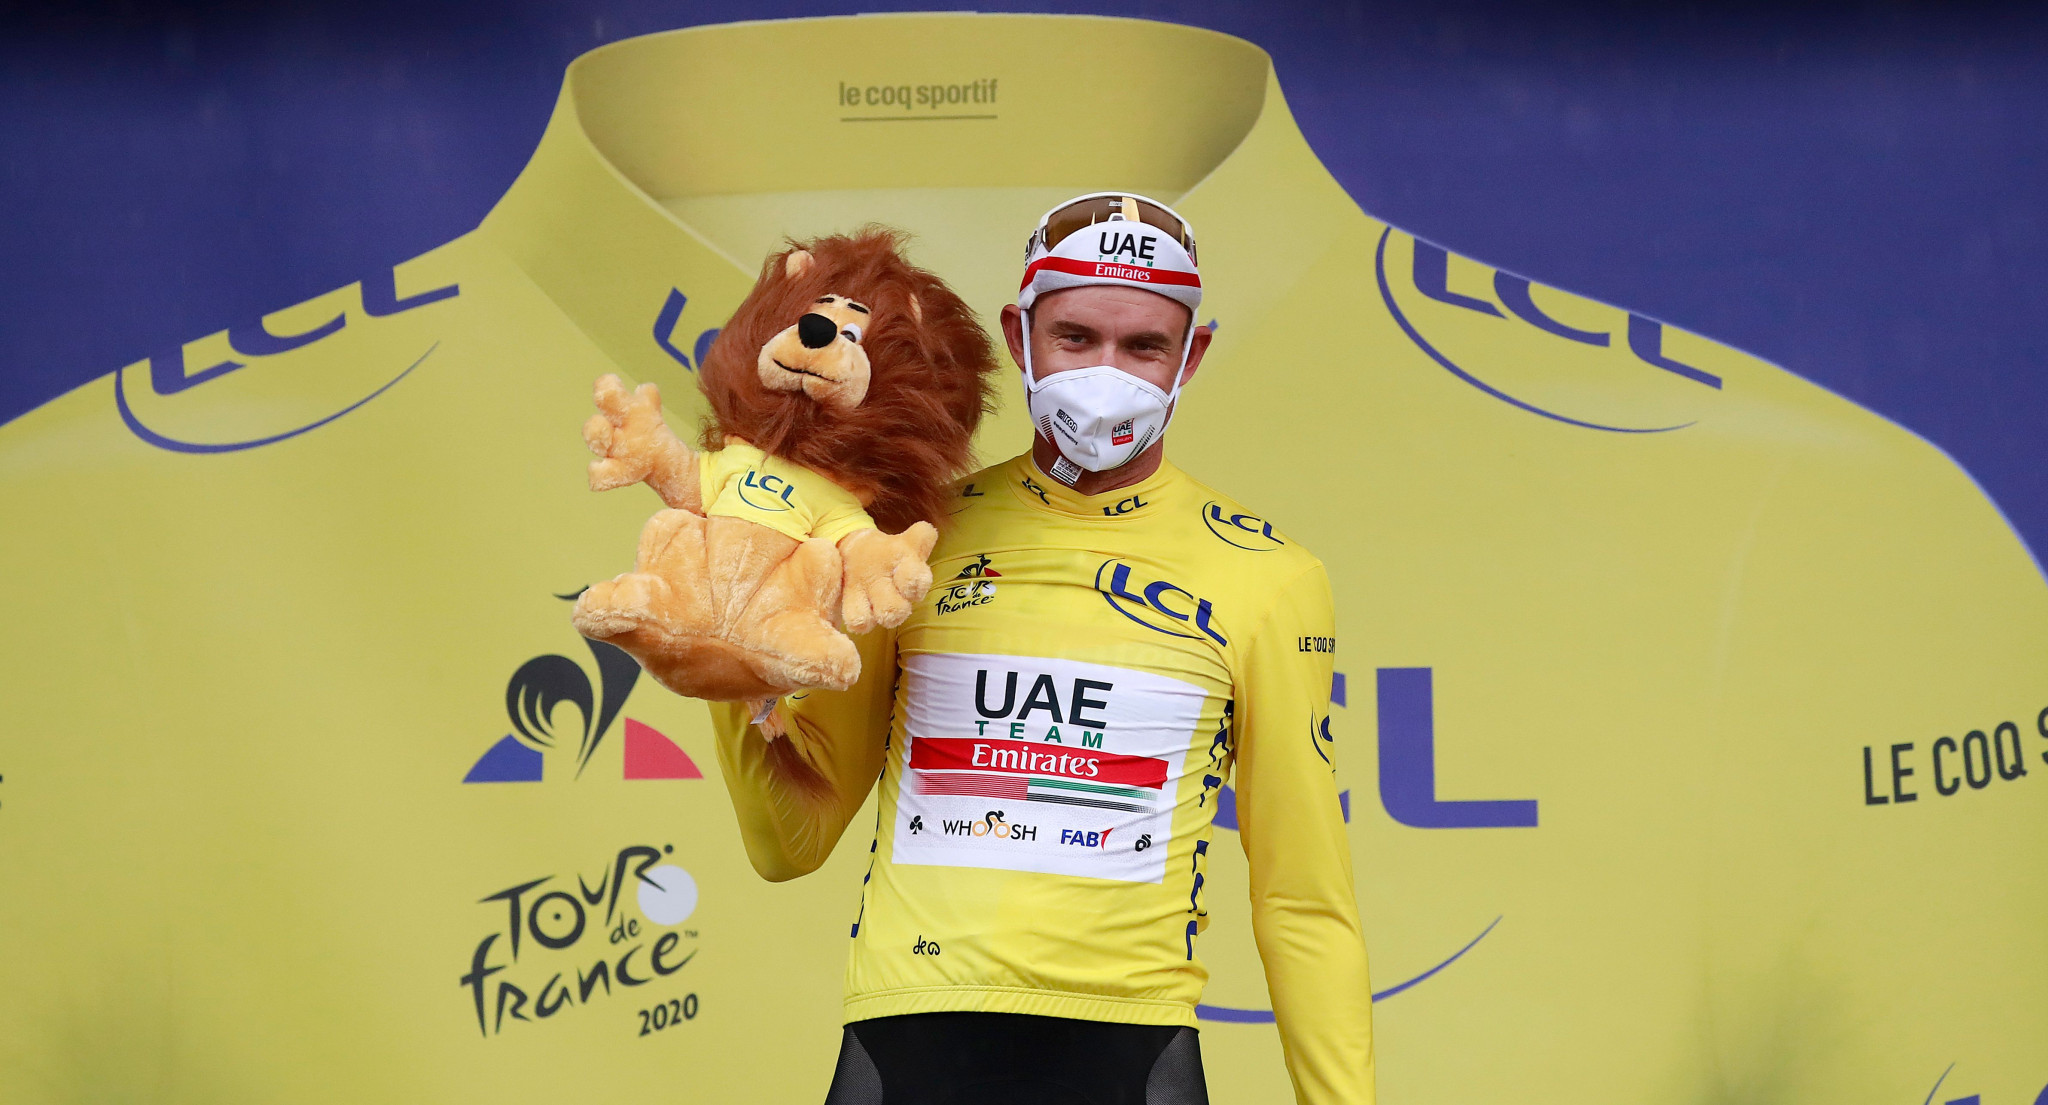 first yellow jersey tour de france